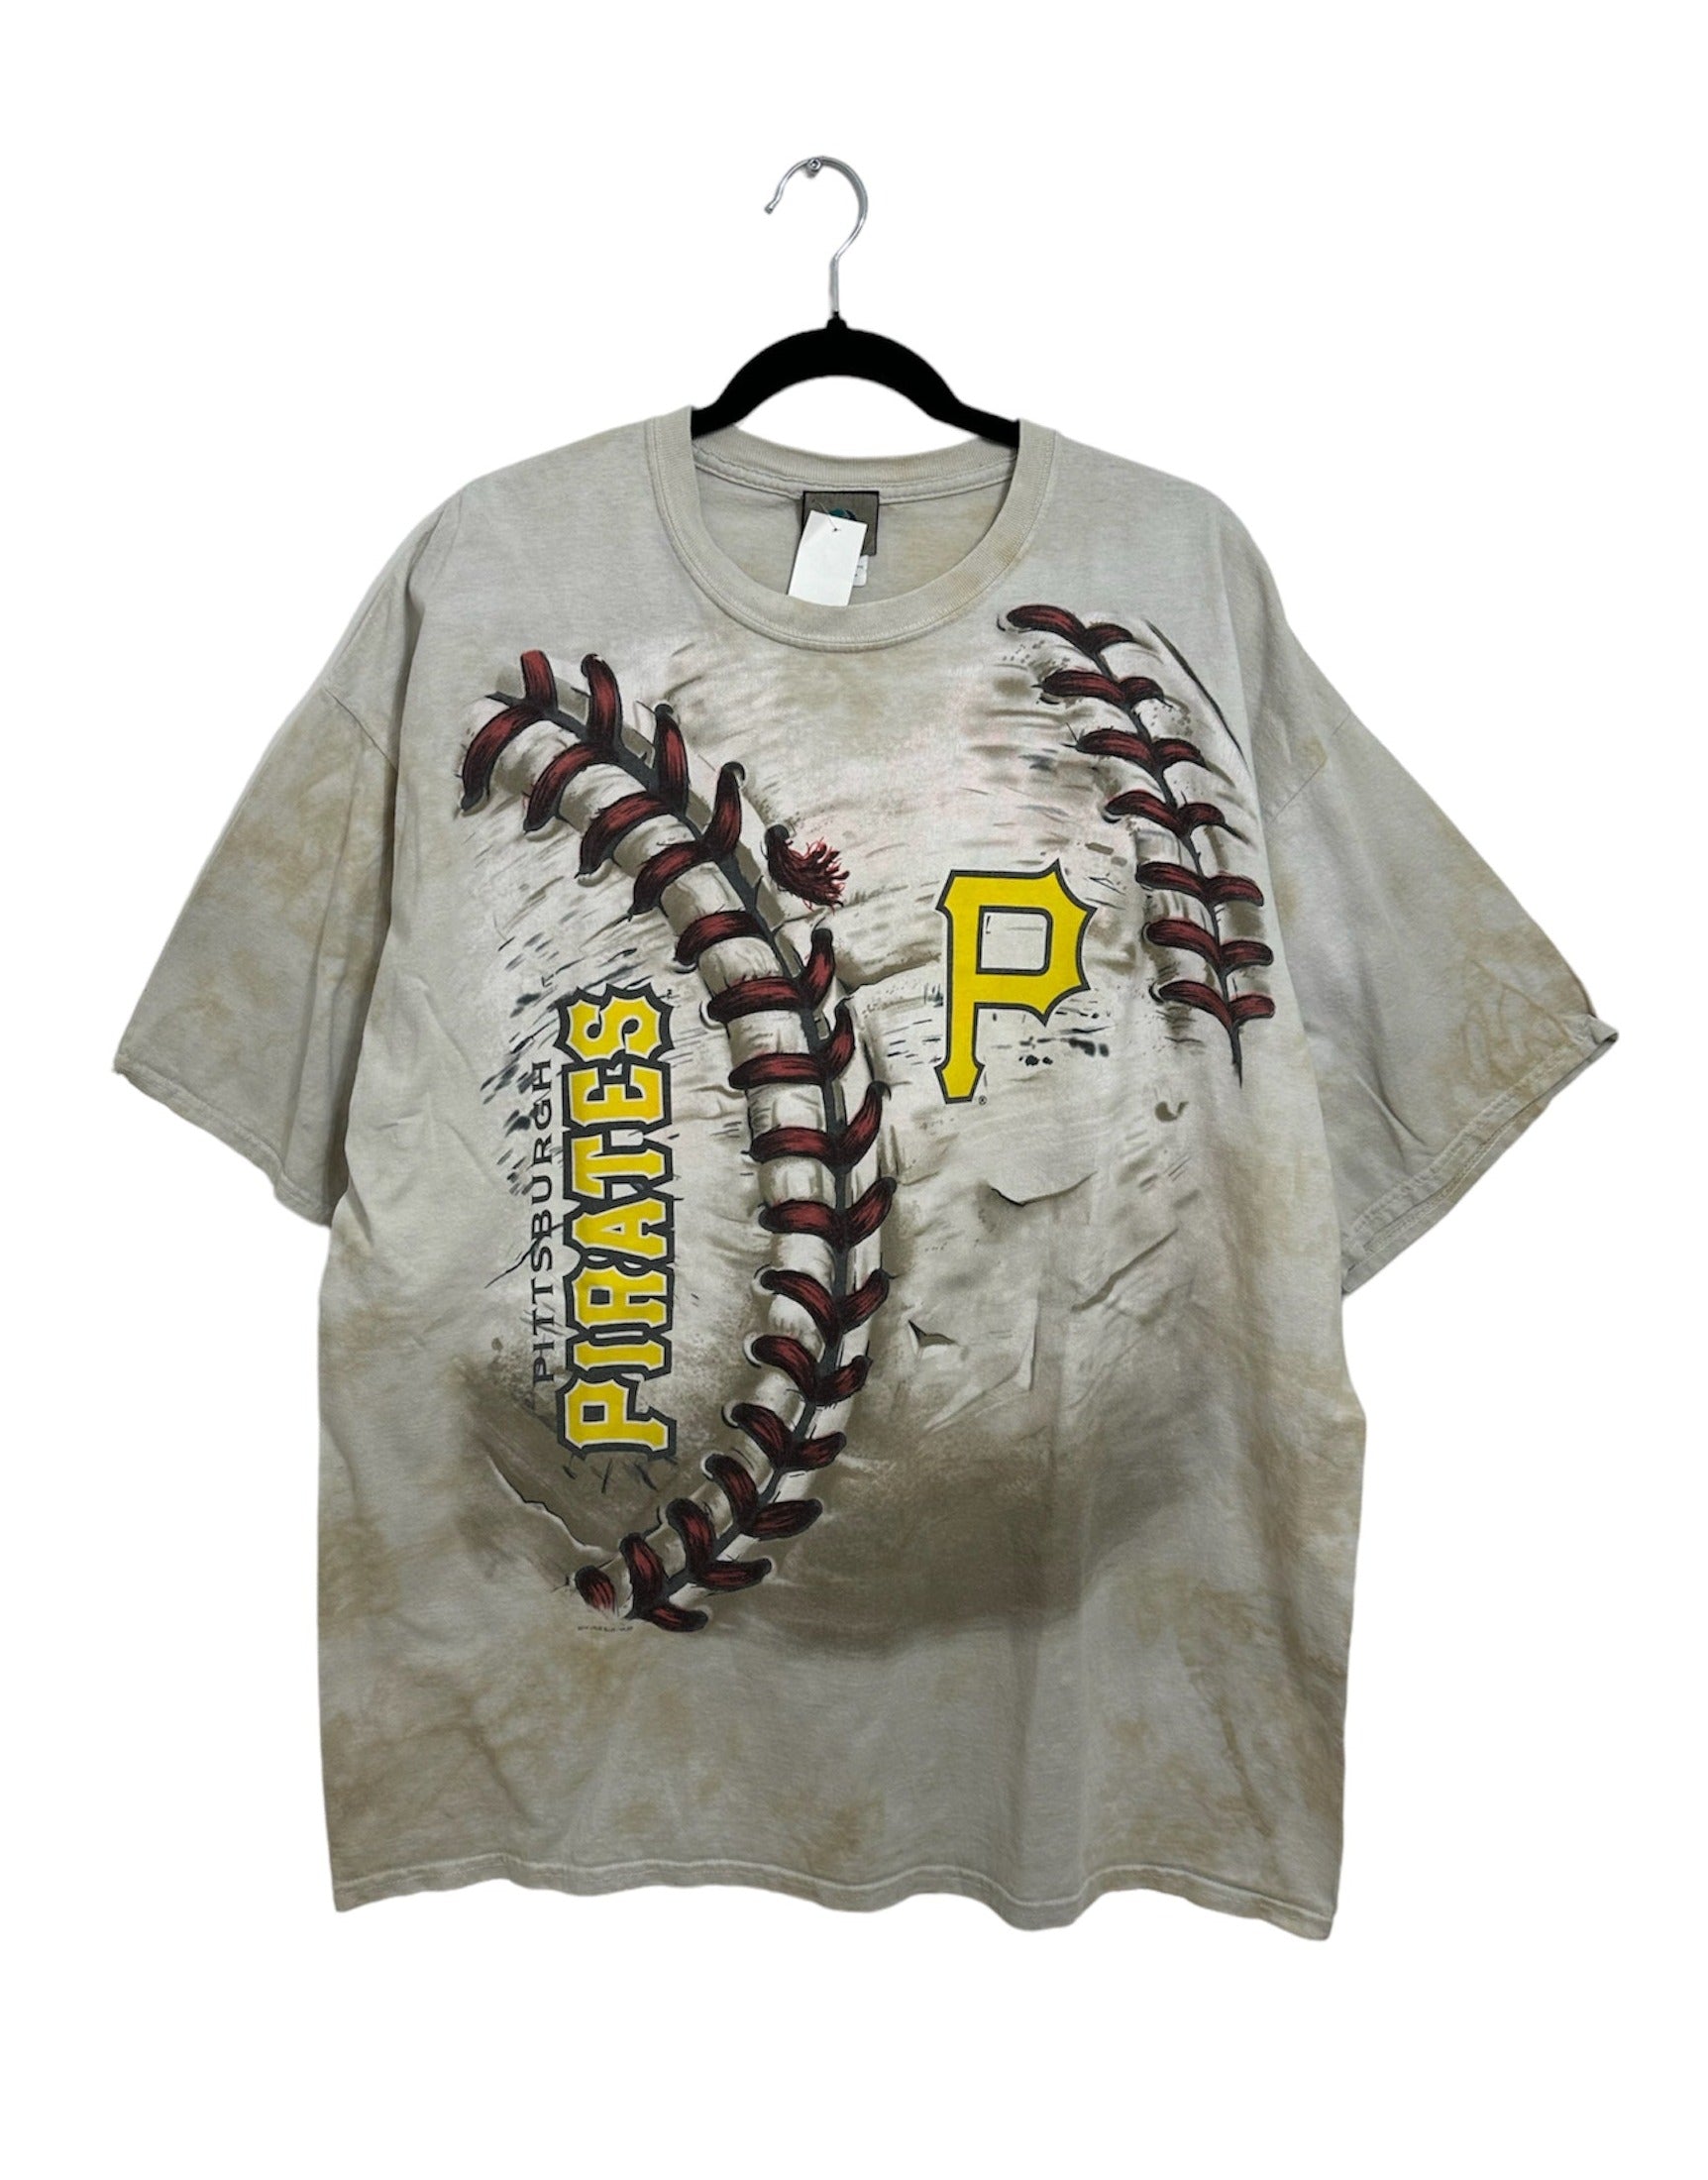 1994 Atlanta Braves T-Shirt –